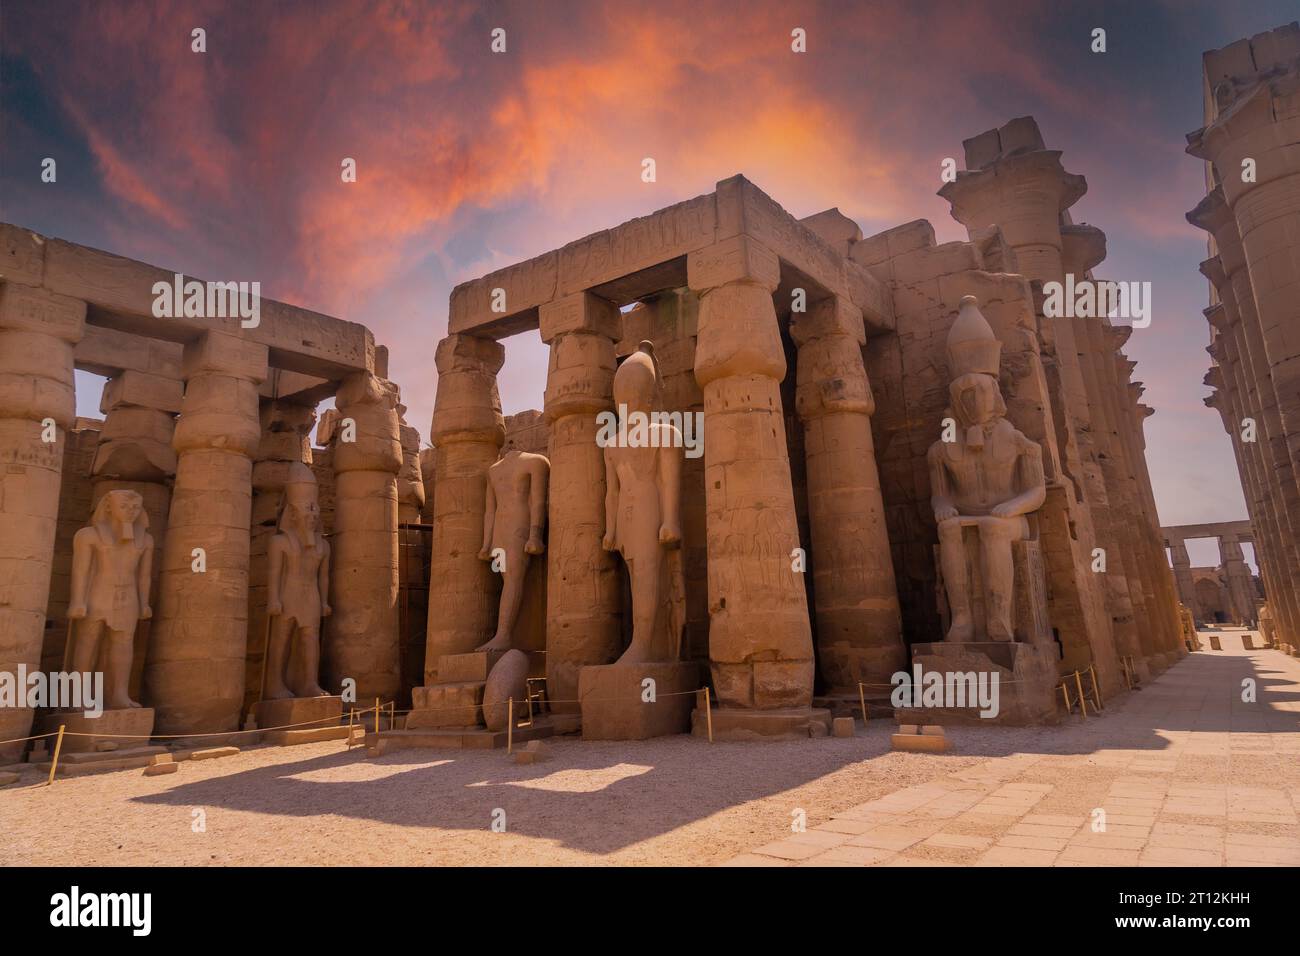 Sculptures des pharaons égyptiens anciens et dessins sur les colonnes du Temple de Louxor dans la soirée. Égypte Banque D'Images